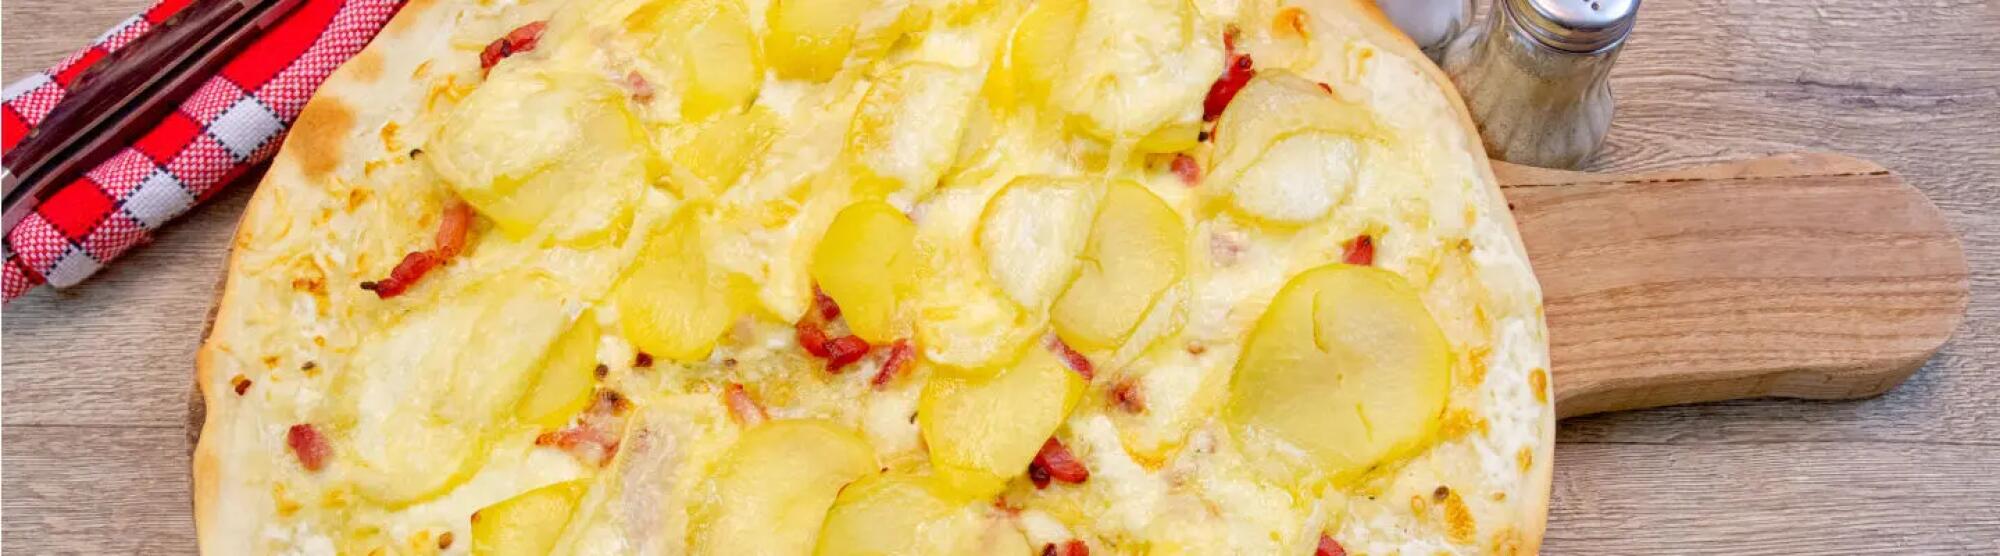 Recette : Pizza rustique au maroilles, lardons et pommes de terre